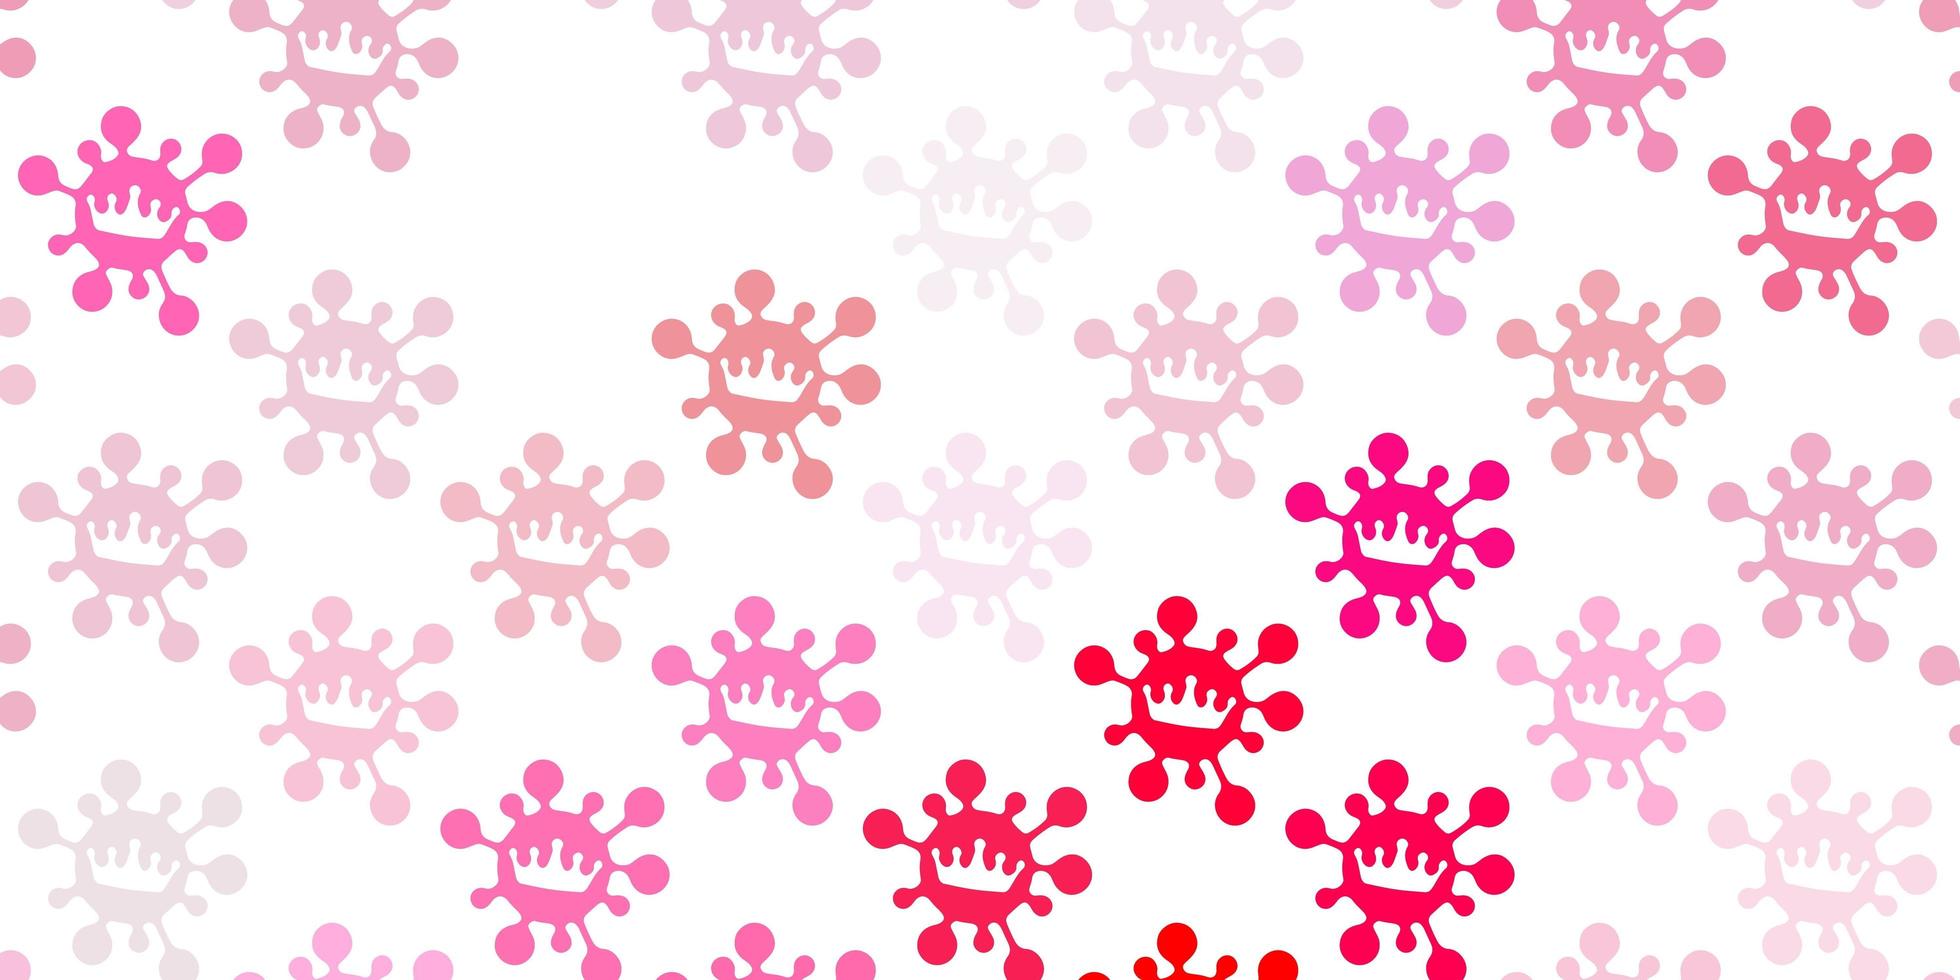 modello vettoriale rosa chiaro con elementi di coronavirus.